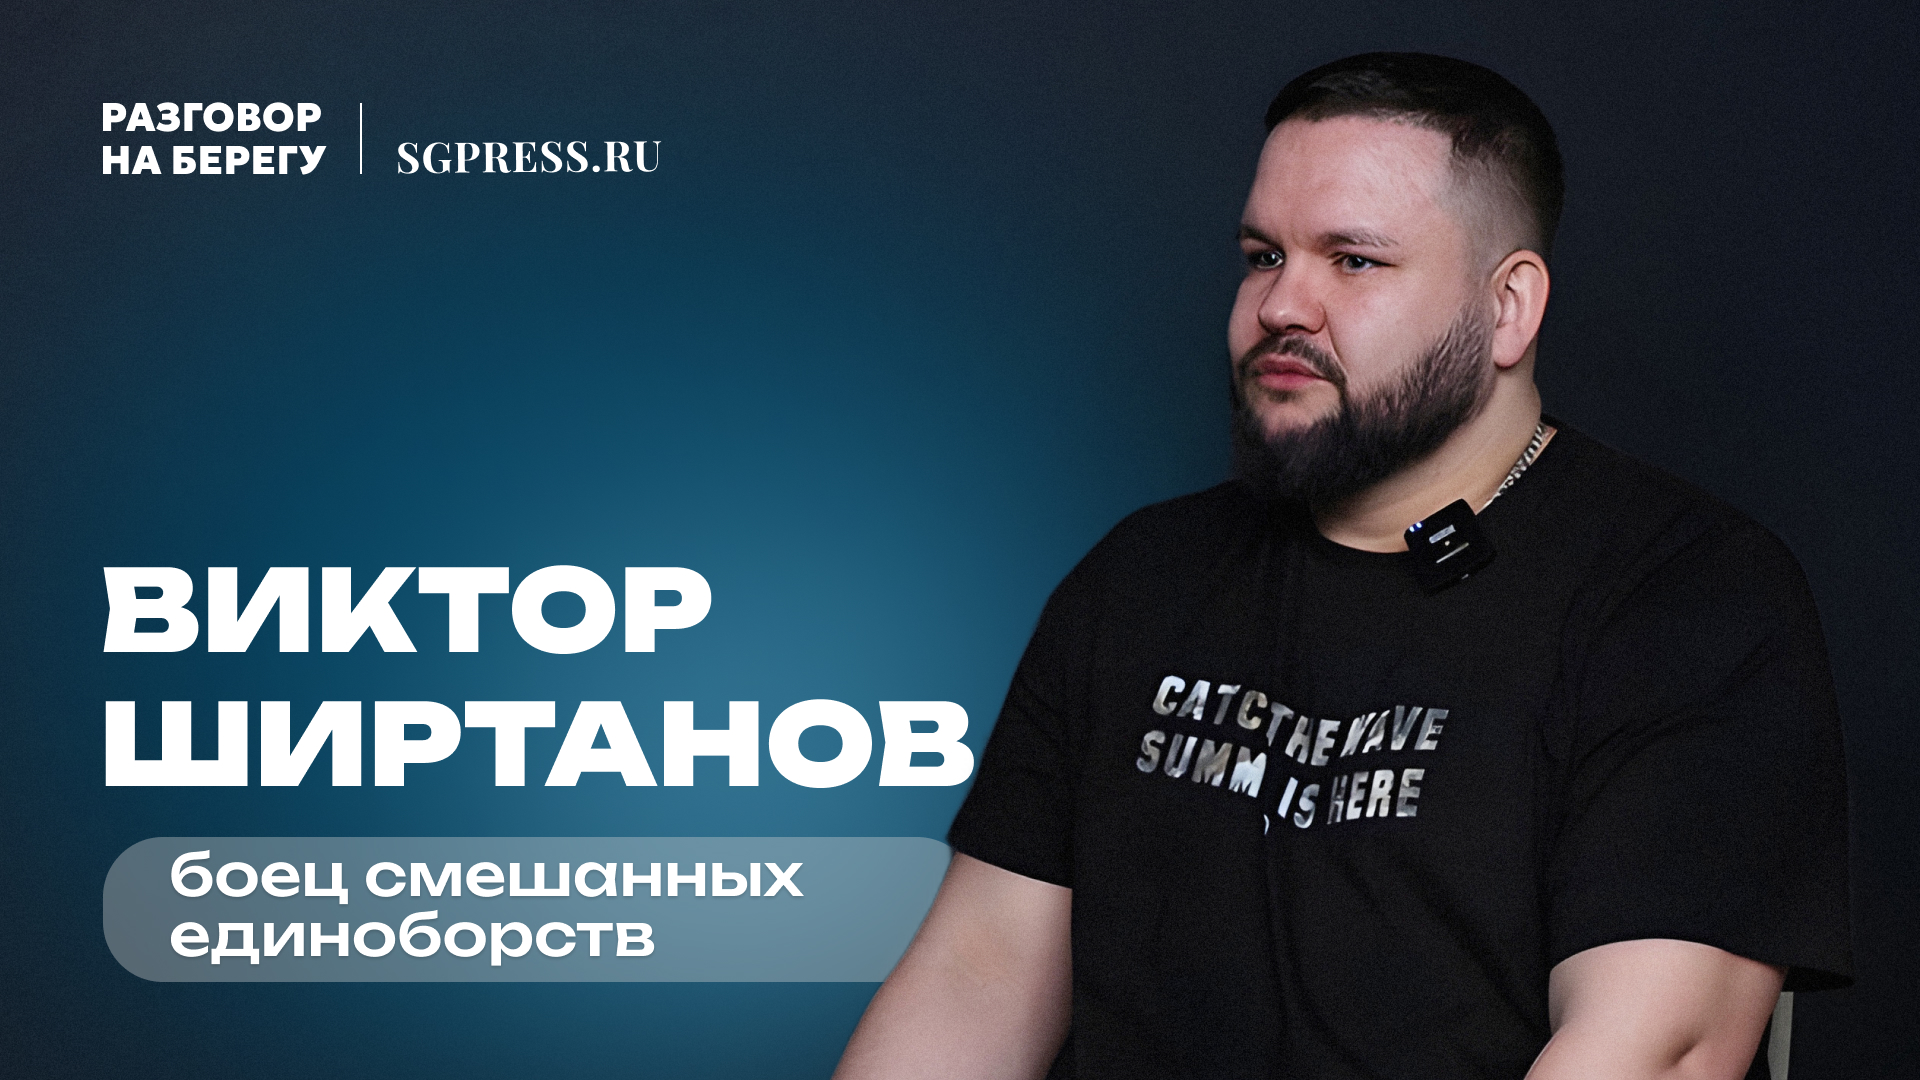 Подкаст с Виктором Ширтановым - о ММА и поп-ММА, весогонке, трештоке и семье